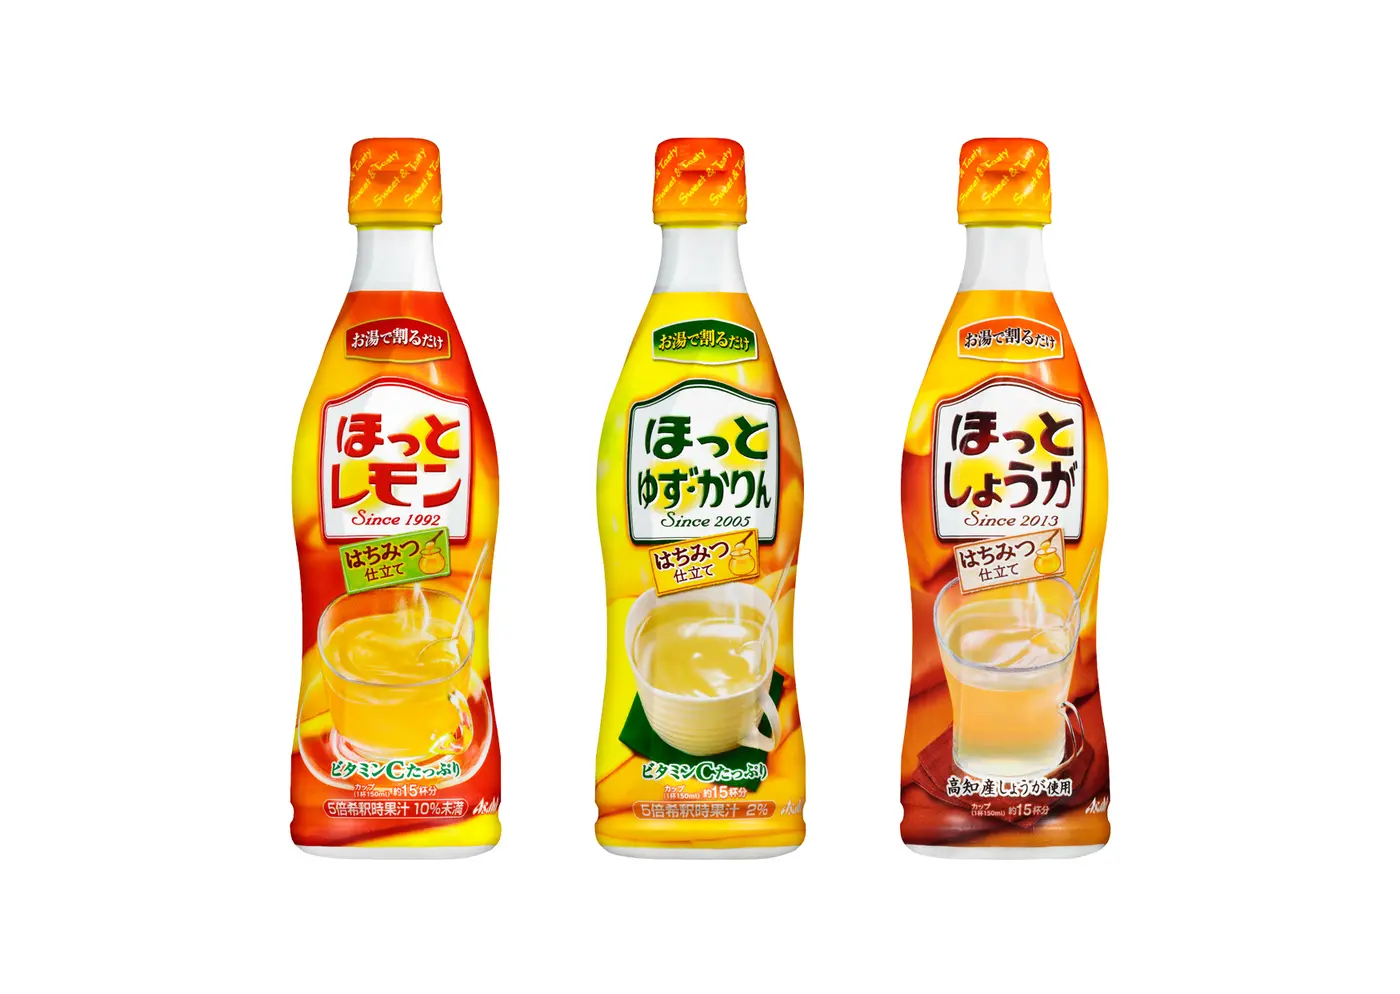 新商品 寒い季節はあたたか い飲み物を ホットレモン シリーズ3品発売 トクバイニュース